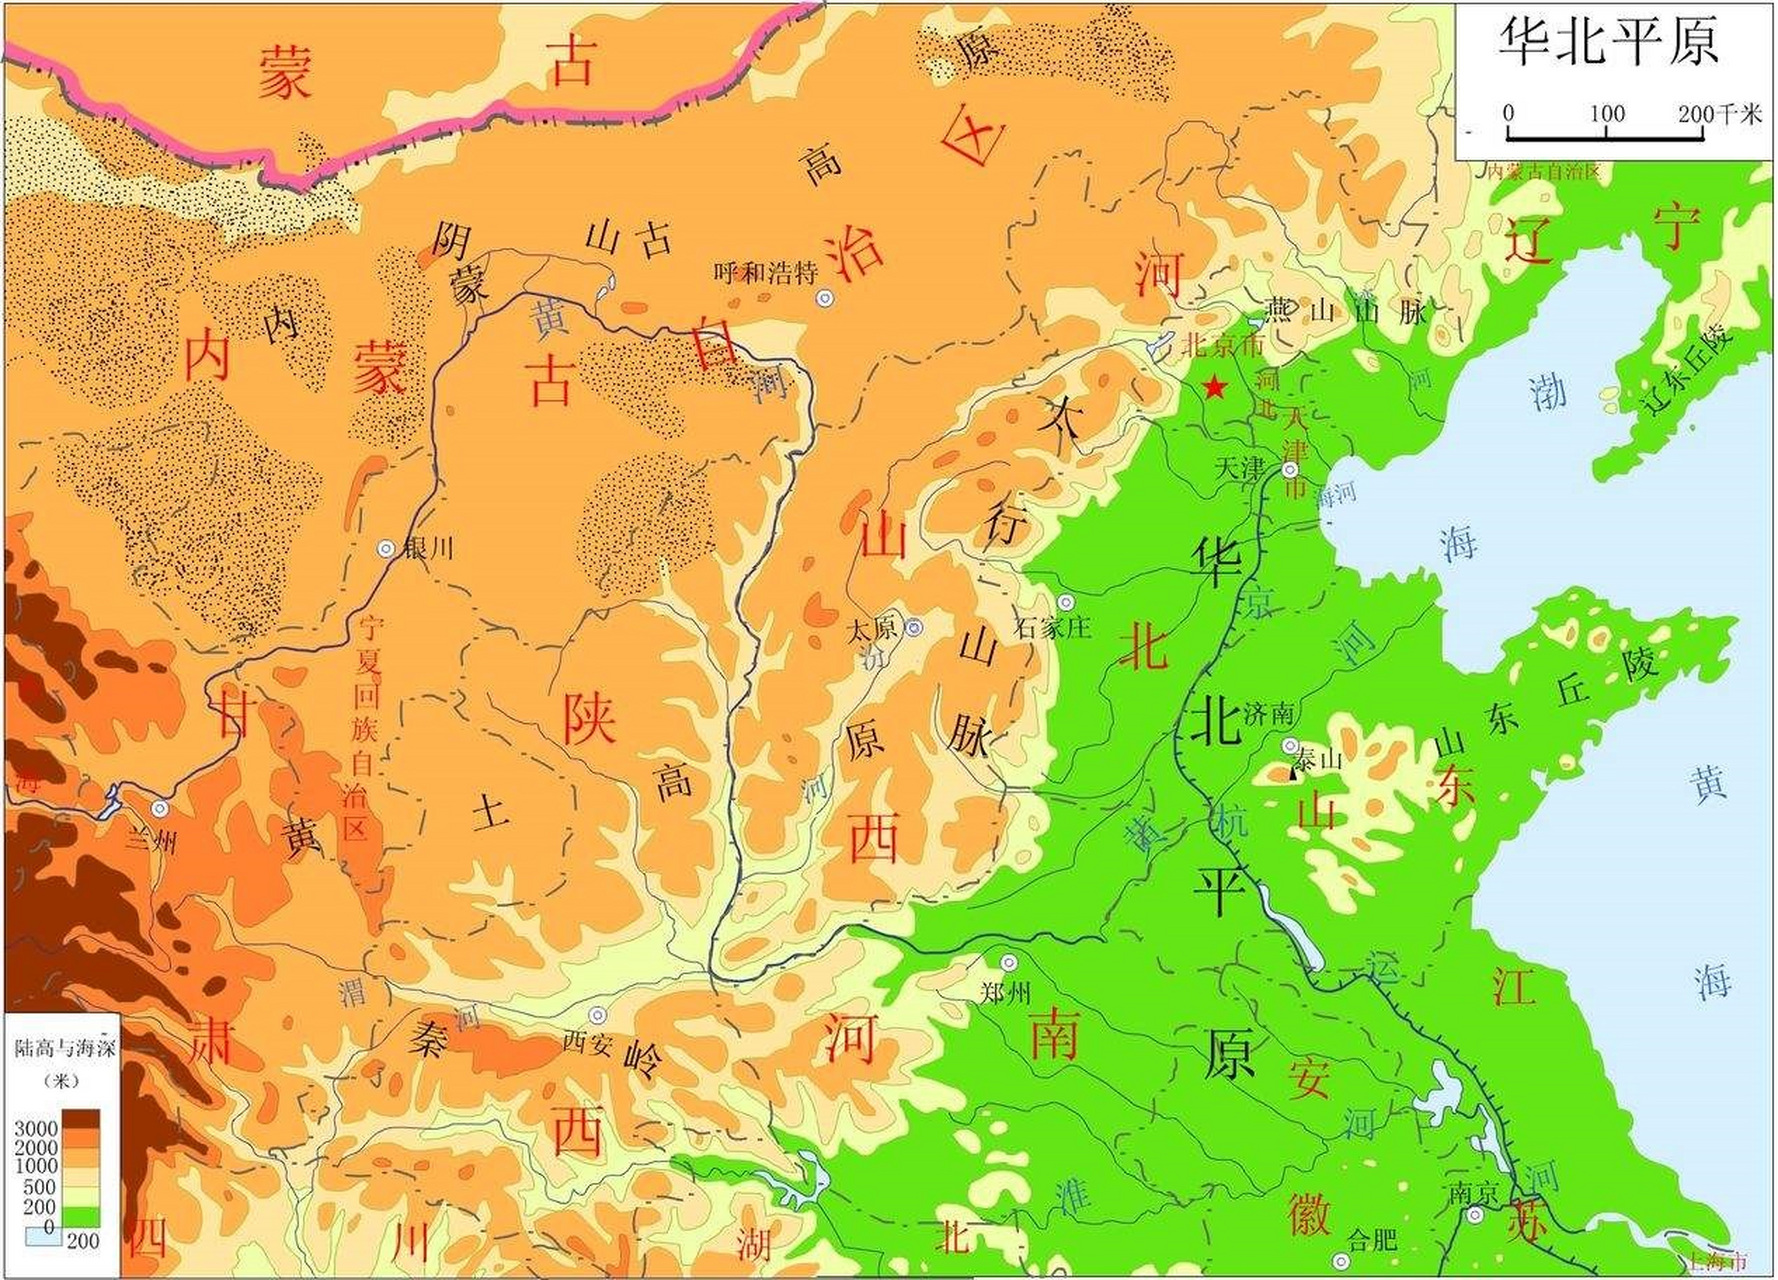 华北地区地形图(包括黄土高原和华北平原地区)